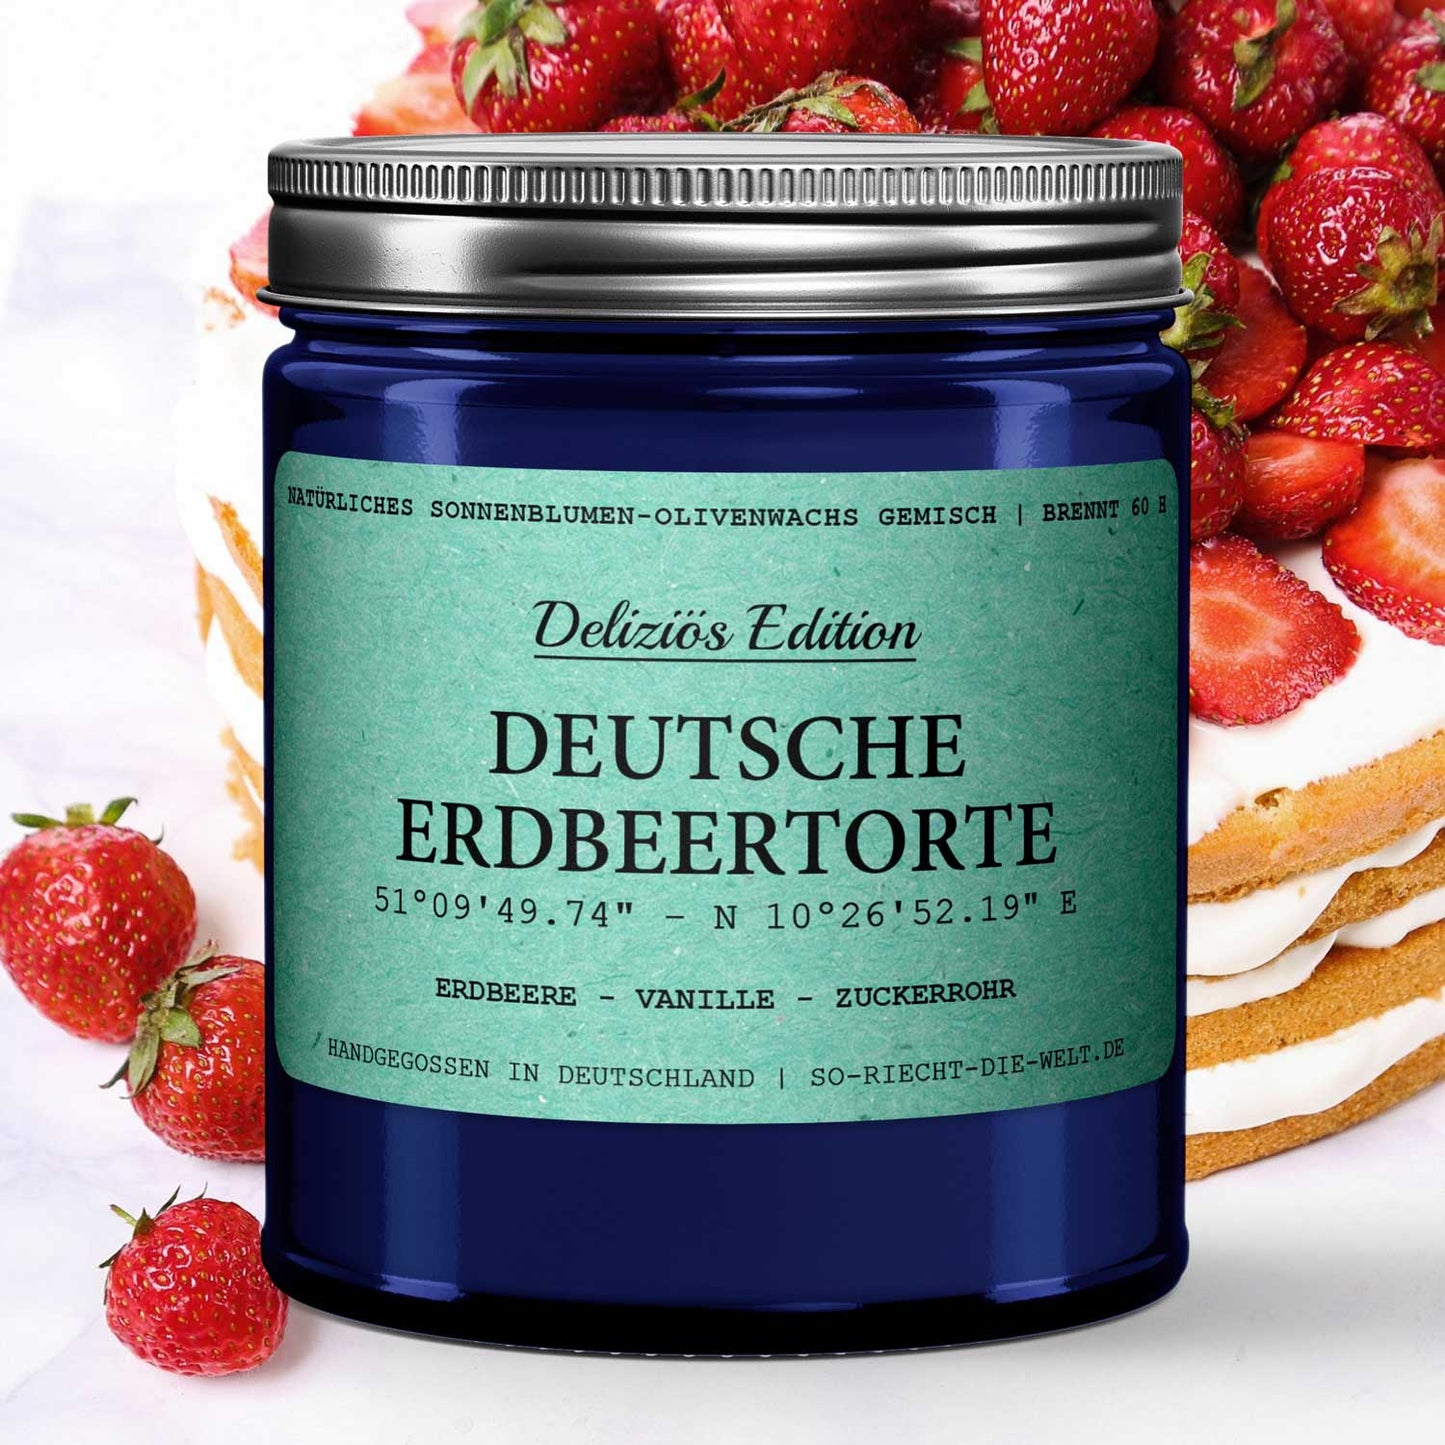 Deutsche Erdbeertorte Duftkerze - Deliziös Edition - Erdbeere | Vanille | Zuckerrohr